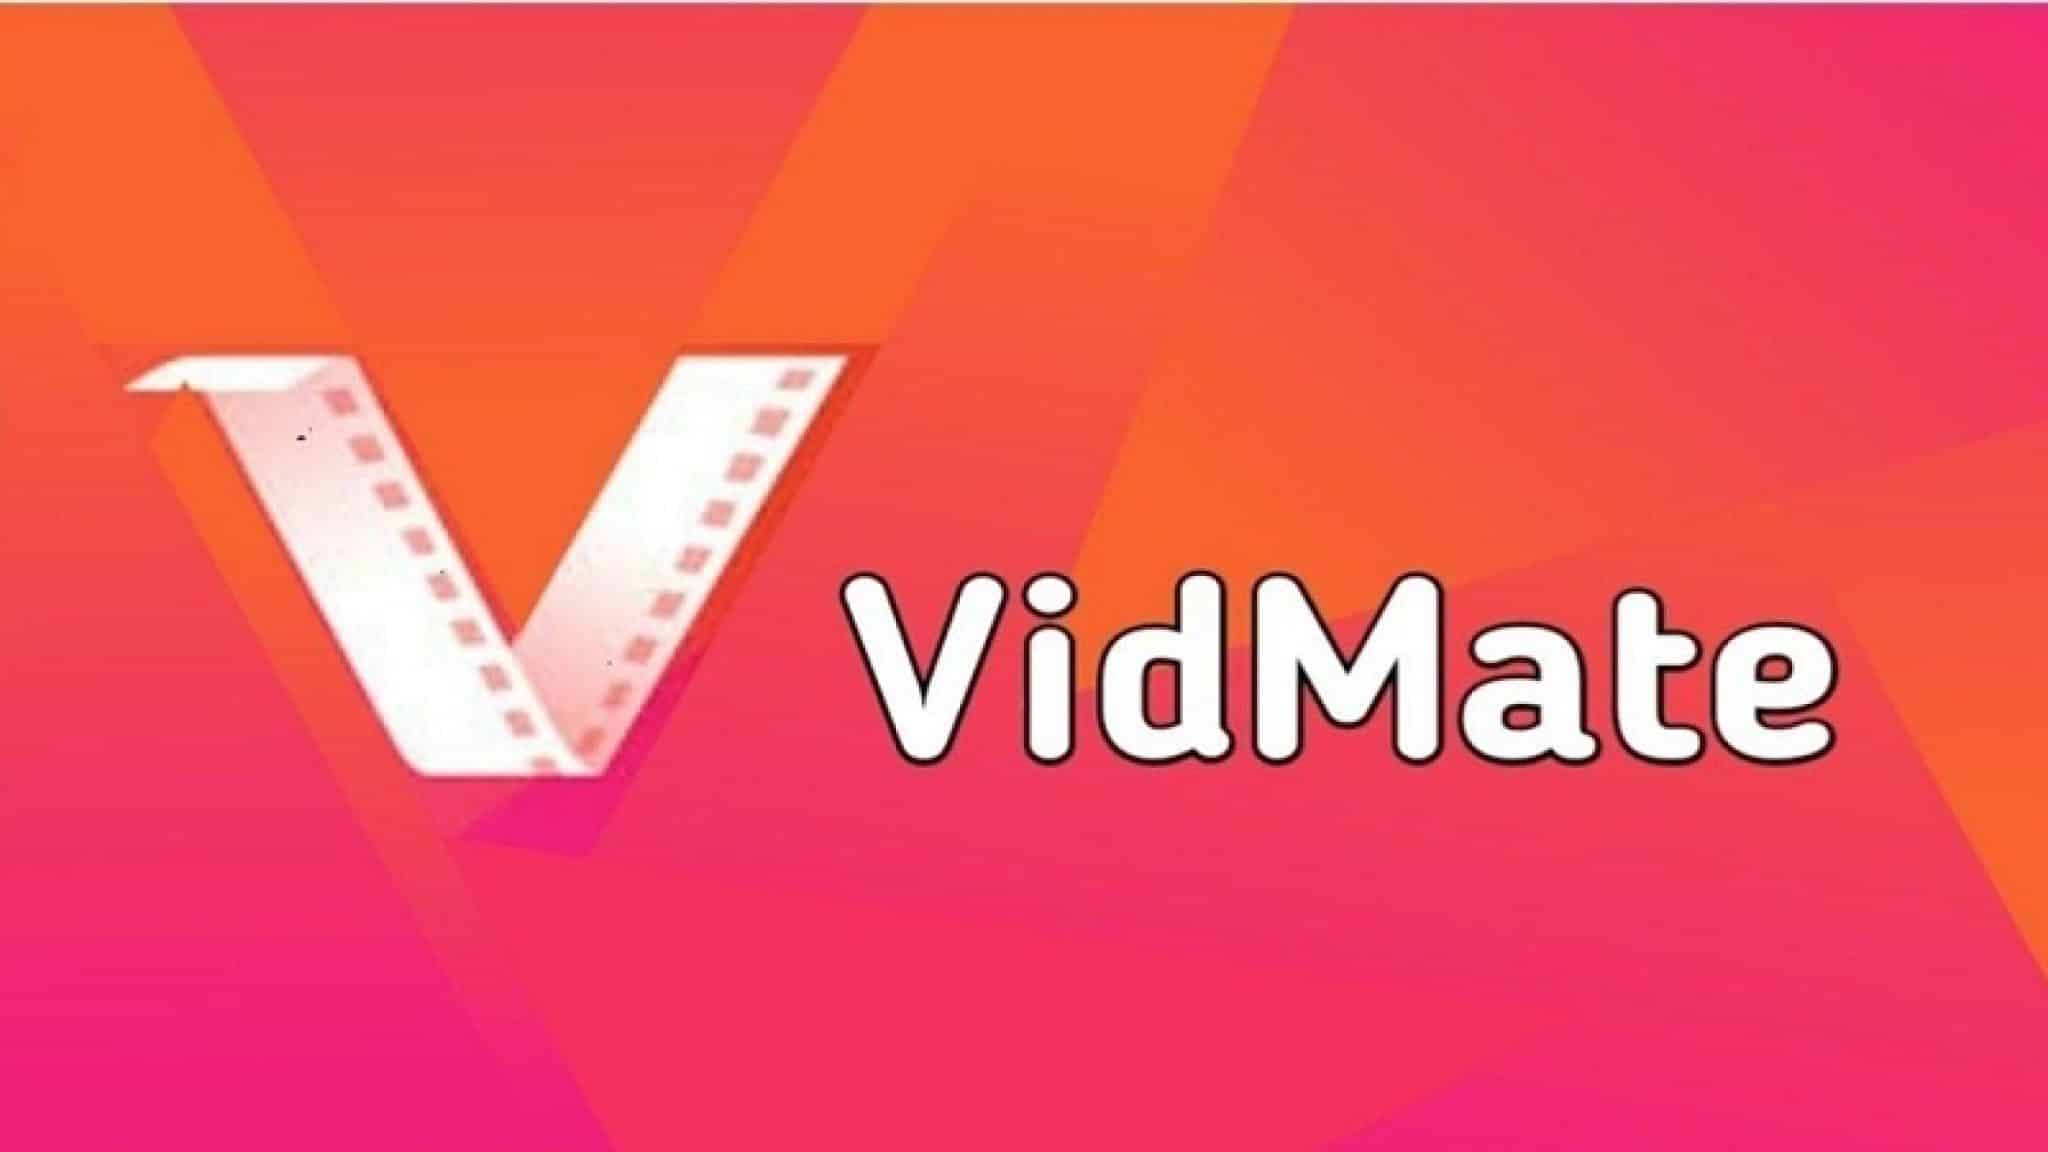 vidmate 2018 download